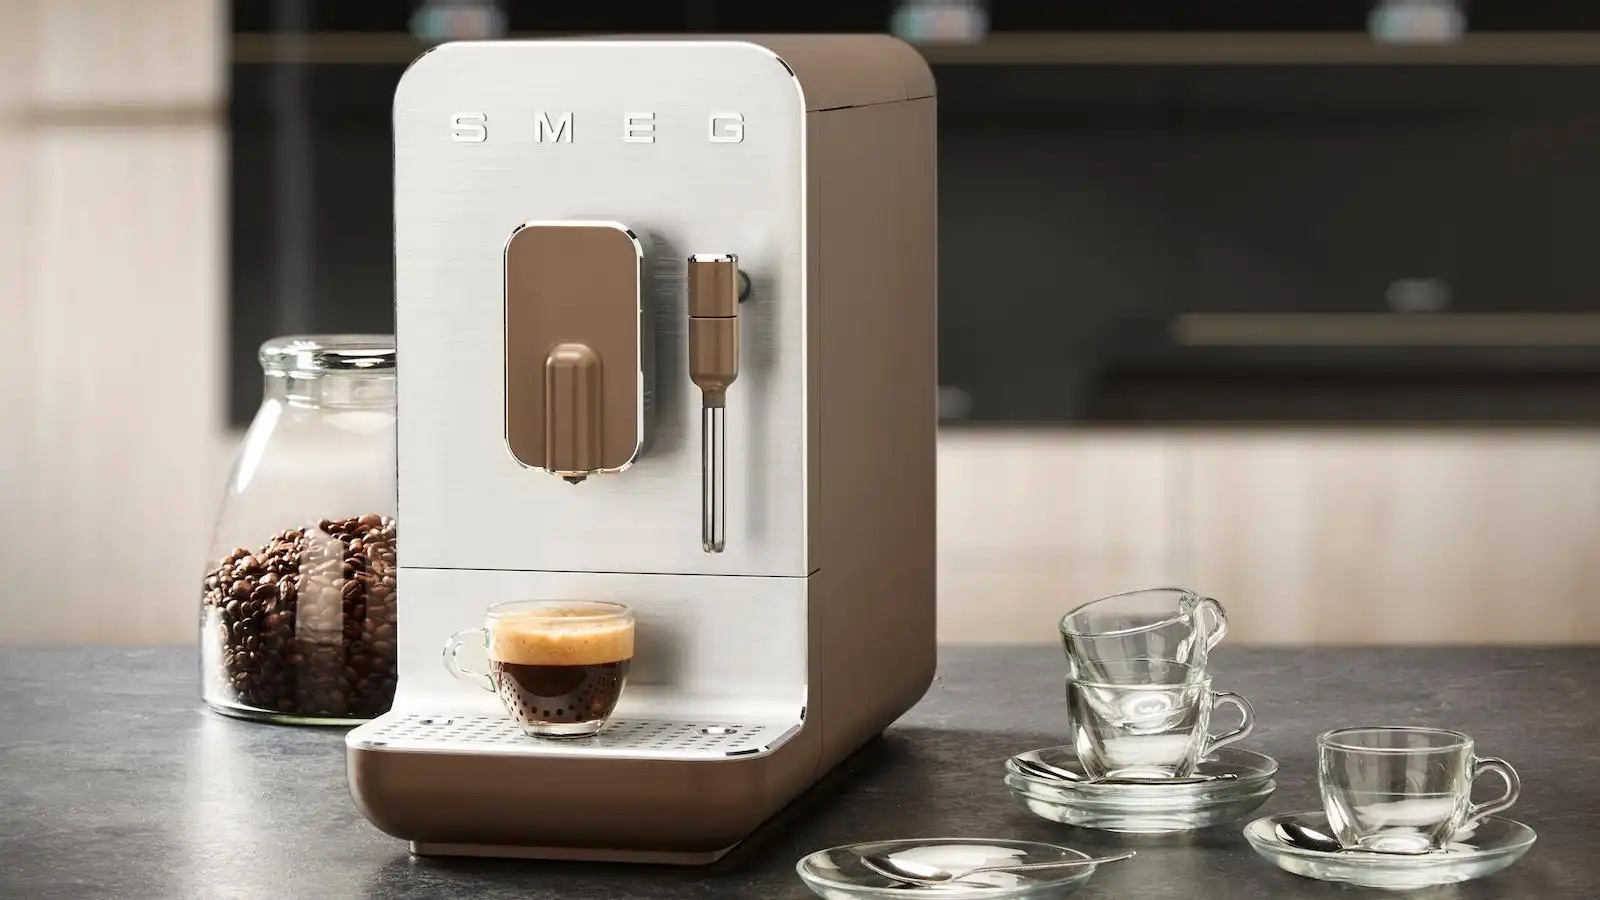 Smeg - Bean To Cup Coffee Machine w/ Milk Frother - Black Matt